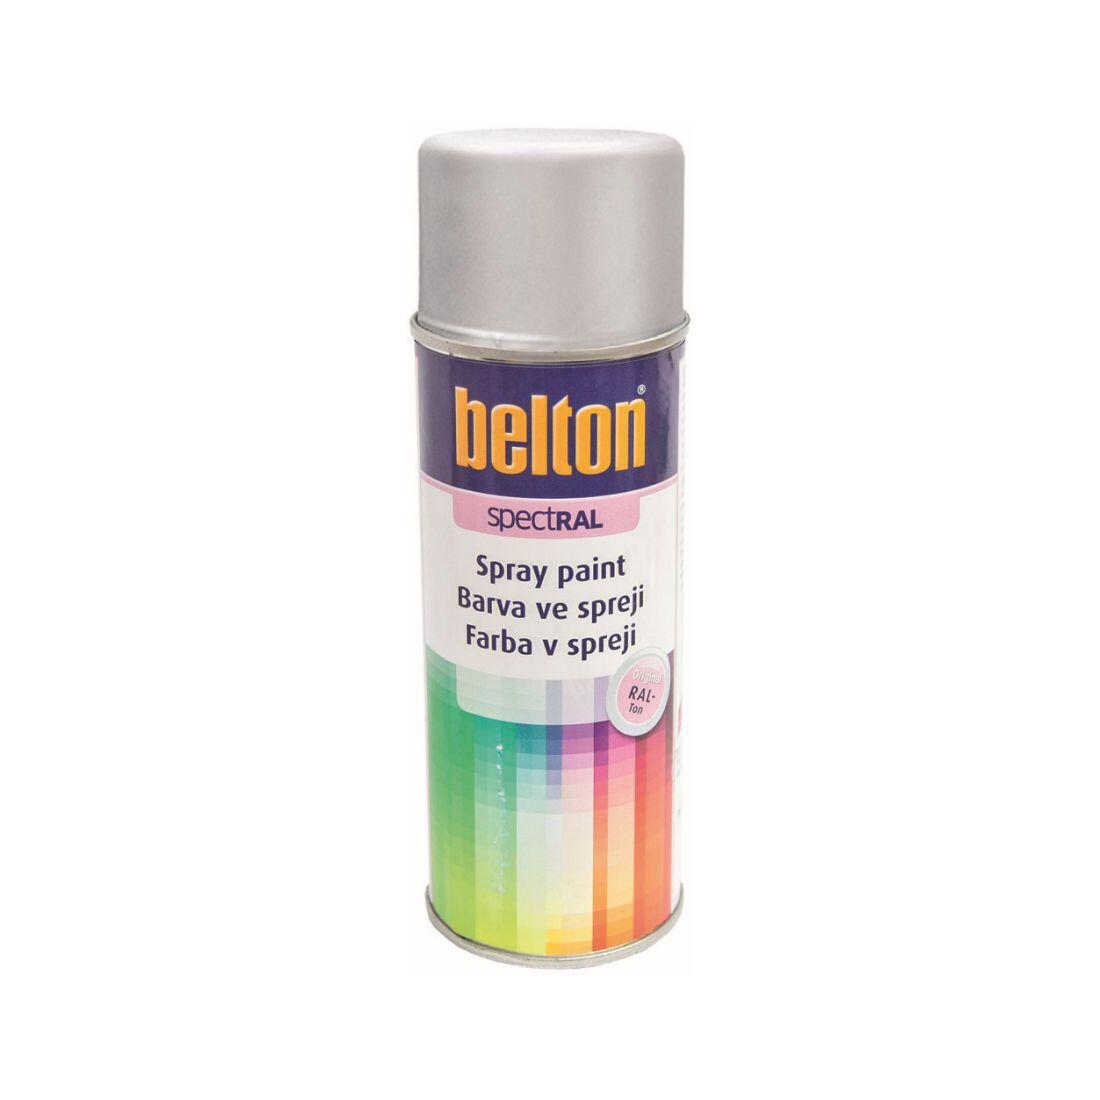 barva ve spreji BELTON RAL 9006, 400ml BÍ Al 0.31 Kg MAXMIX Sklad14 825383 12